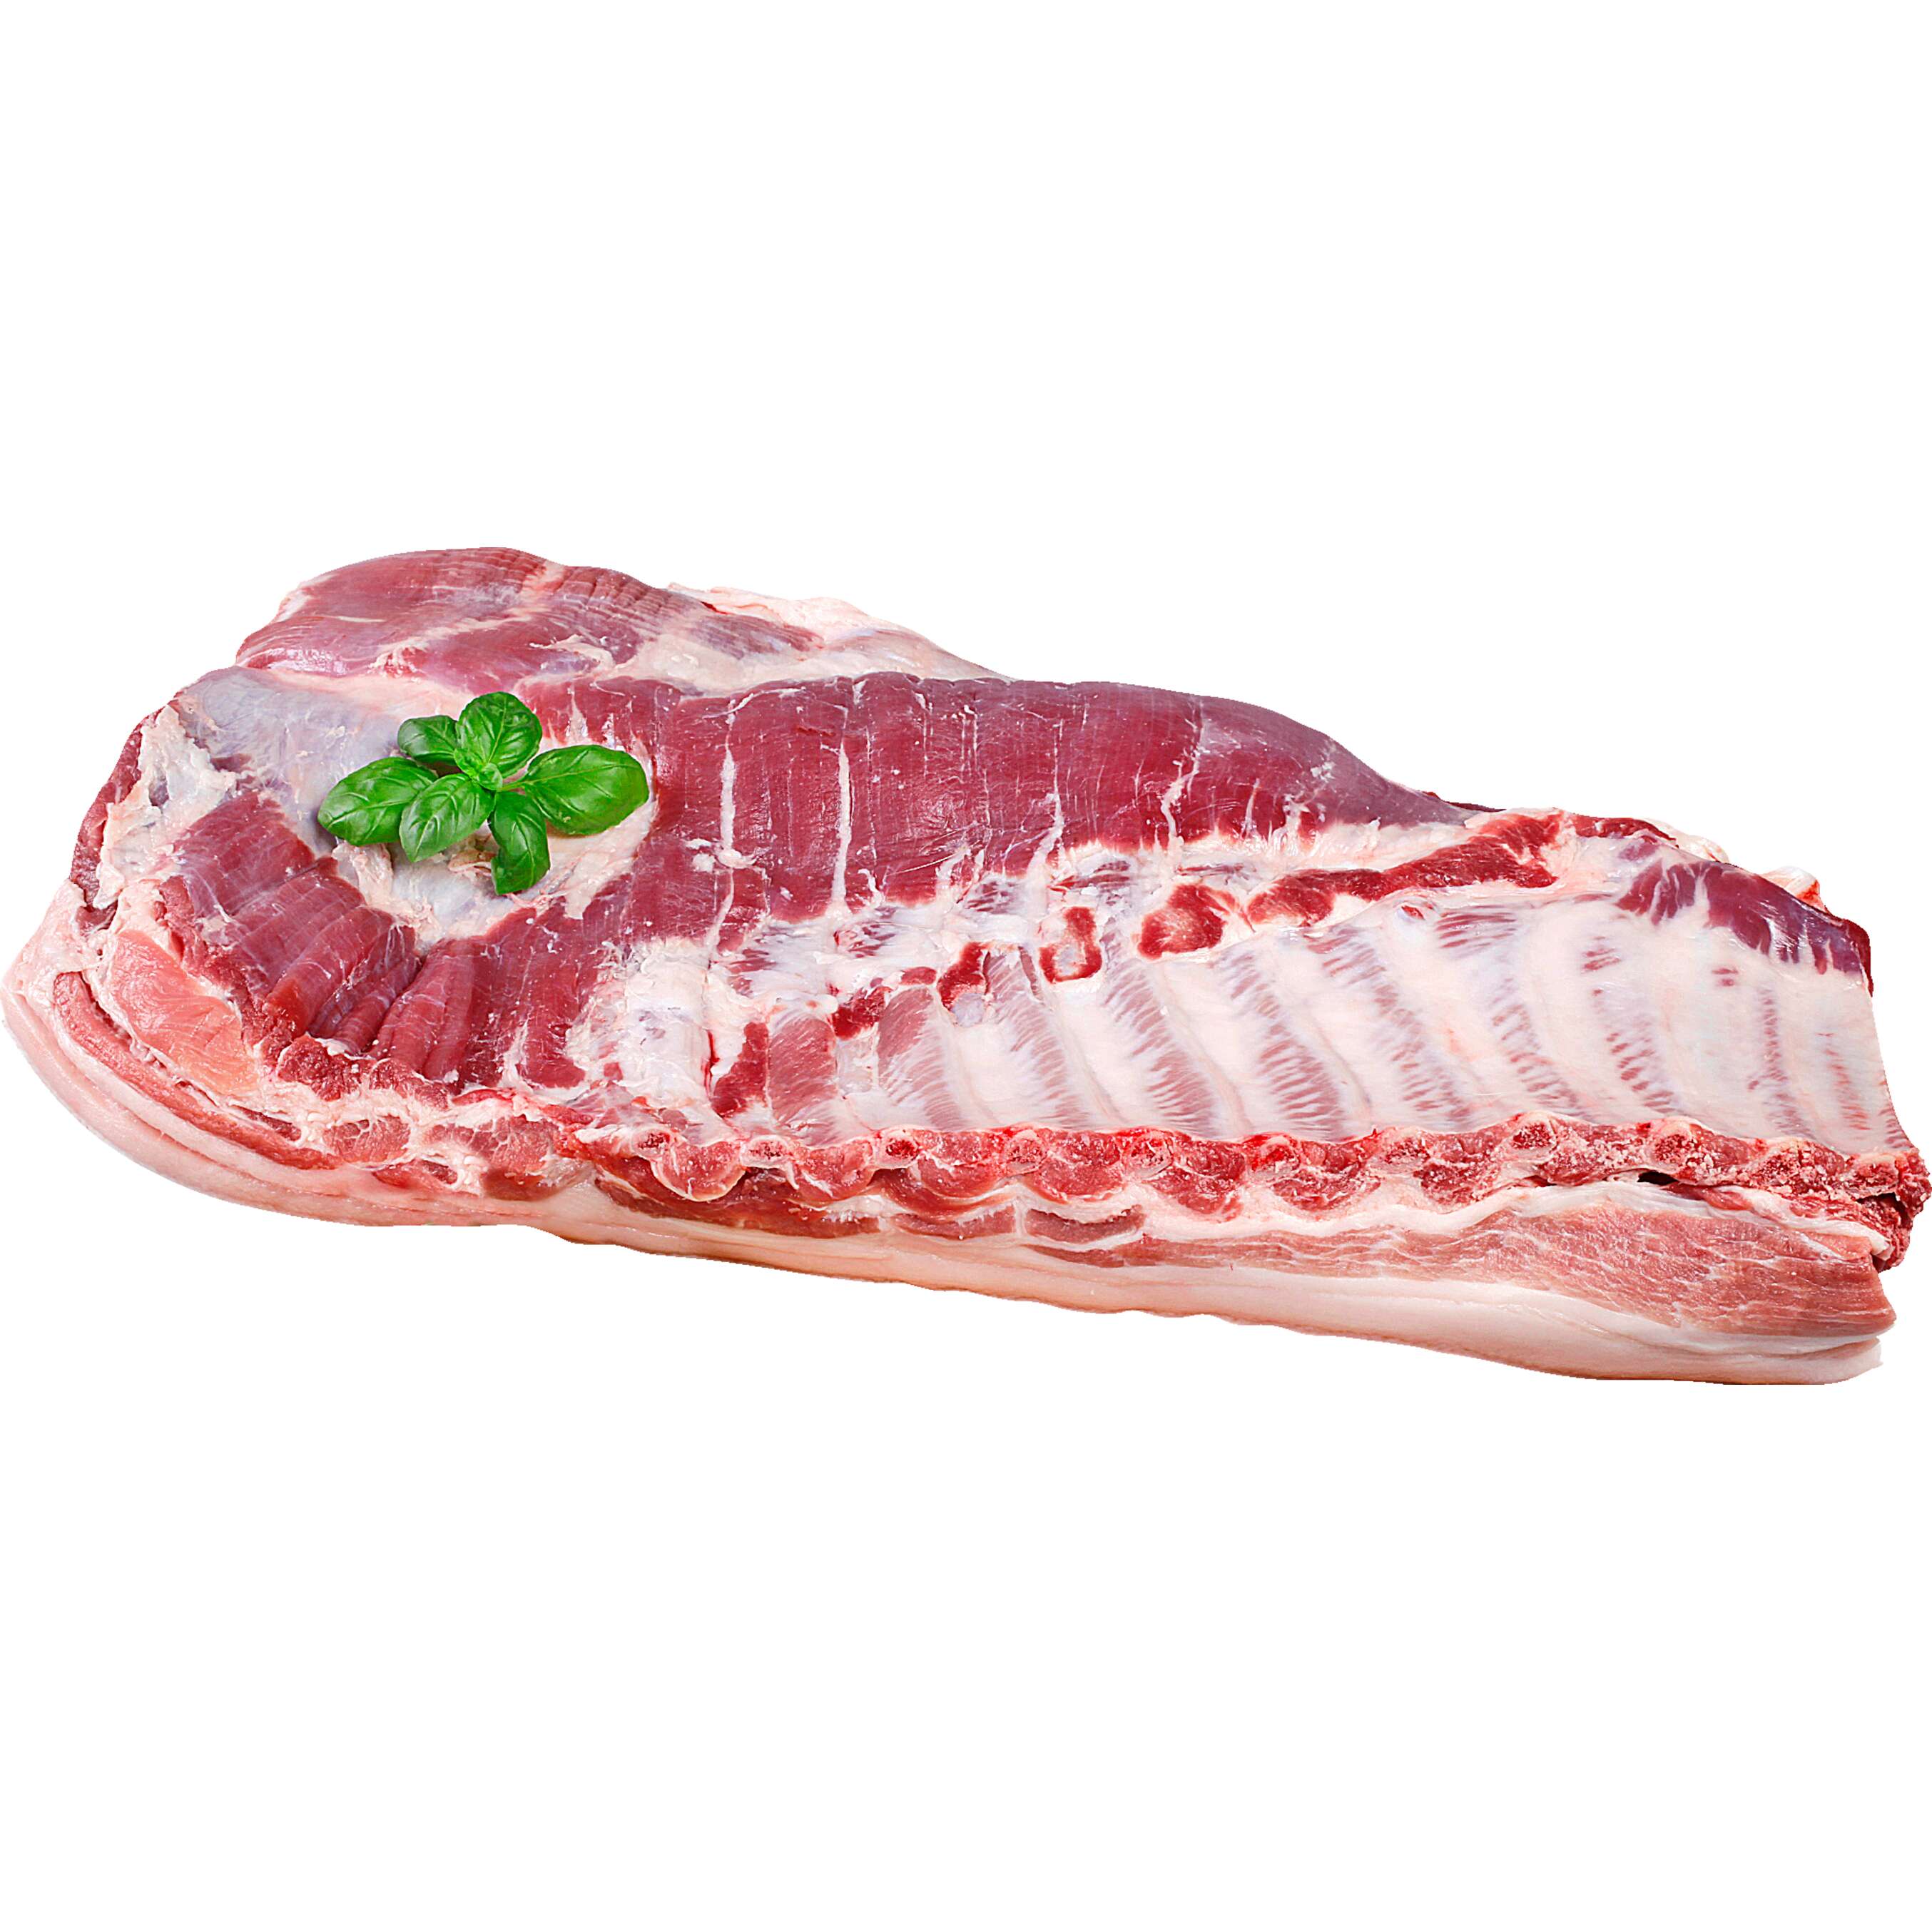 Fotografija ponude Svinjsko carsko meso 1 kg